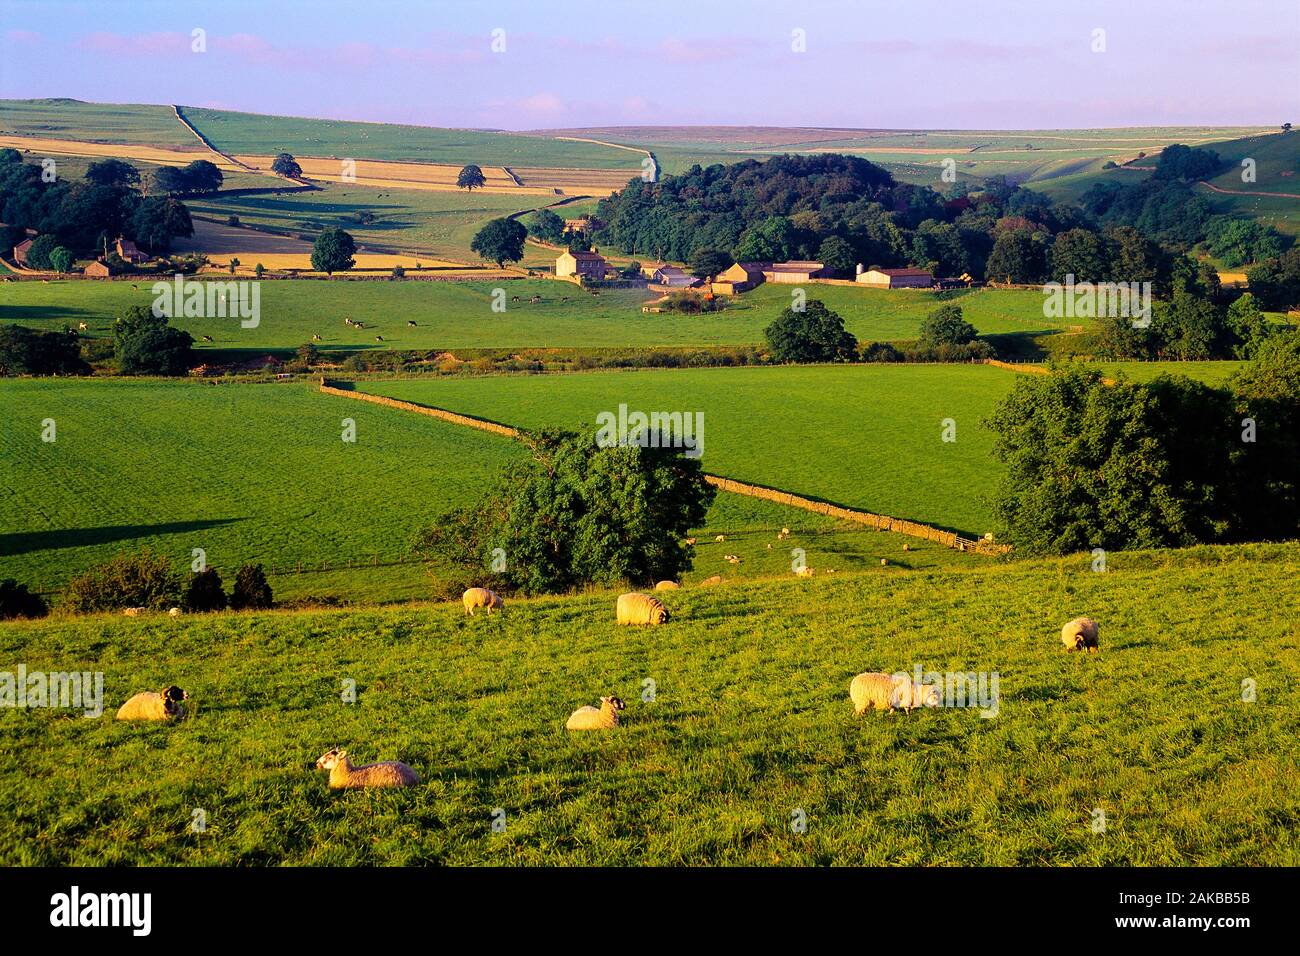 Paysage rural de pâturage avec des moutons et village, Tonbridge, dans le Yorkshire Dales National Park, England, UK Banque D'Images